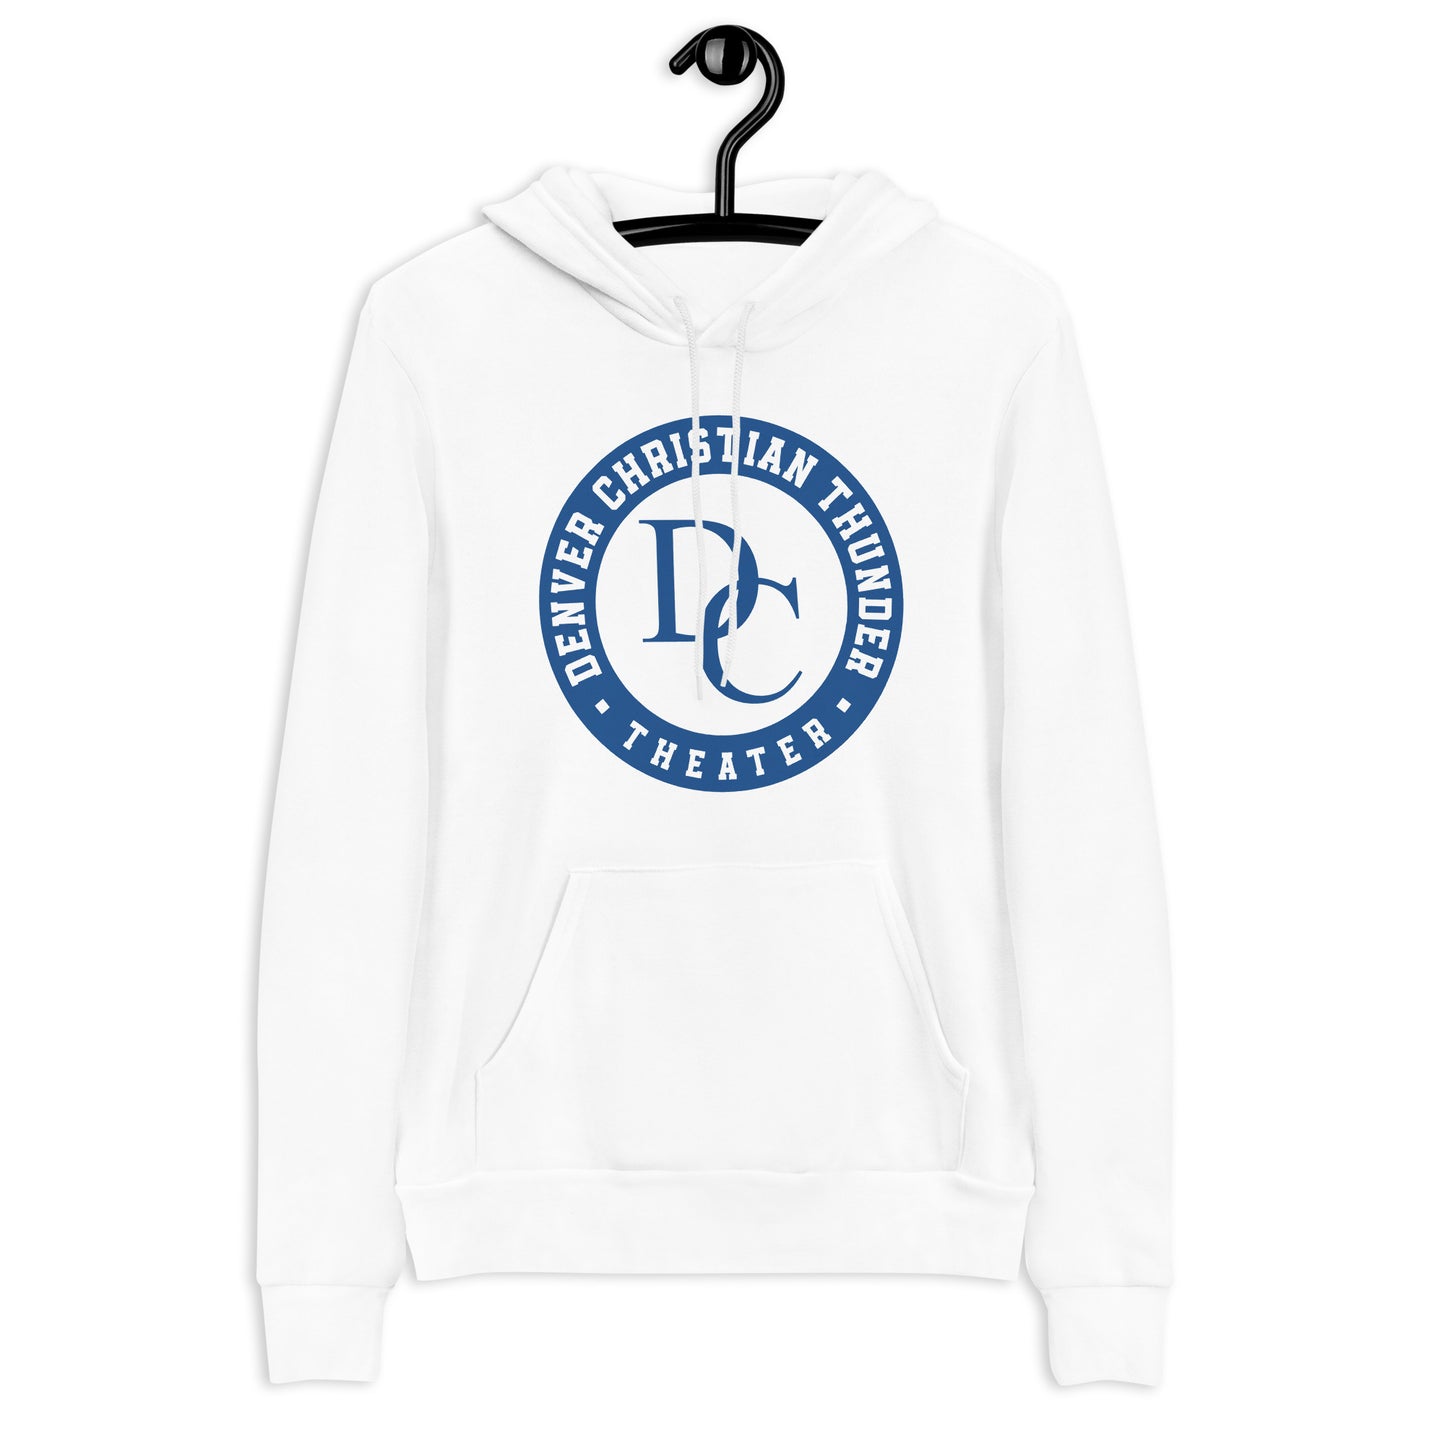 Retro Alumni DC Theater - Unisex hoodie